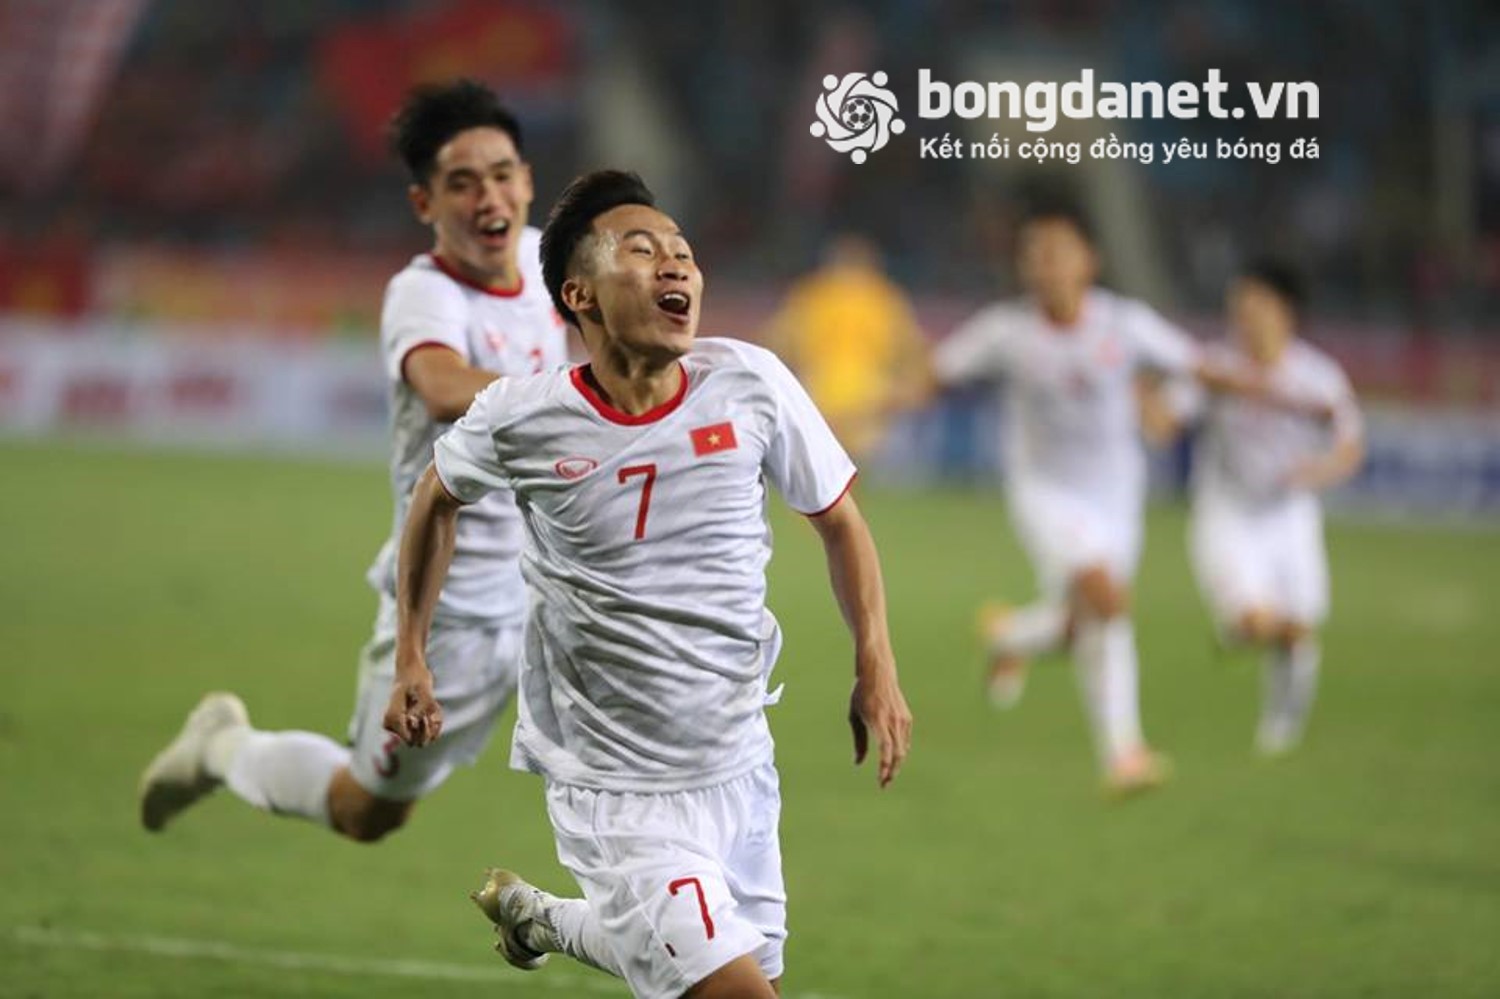 Kết quả U23 Việt Nam vs U23 Indonesia, Kết quả vòng loại U23 châu Á 2020 ngày 24/3